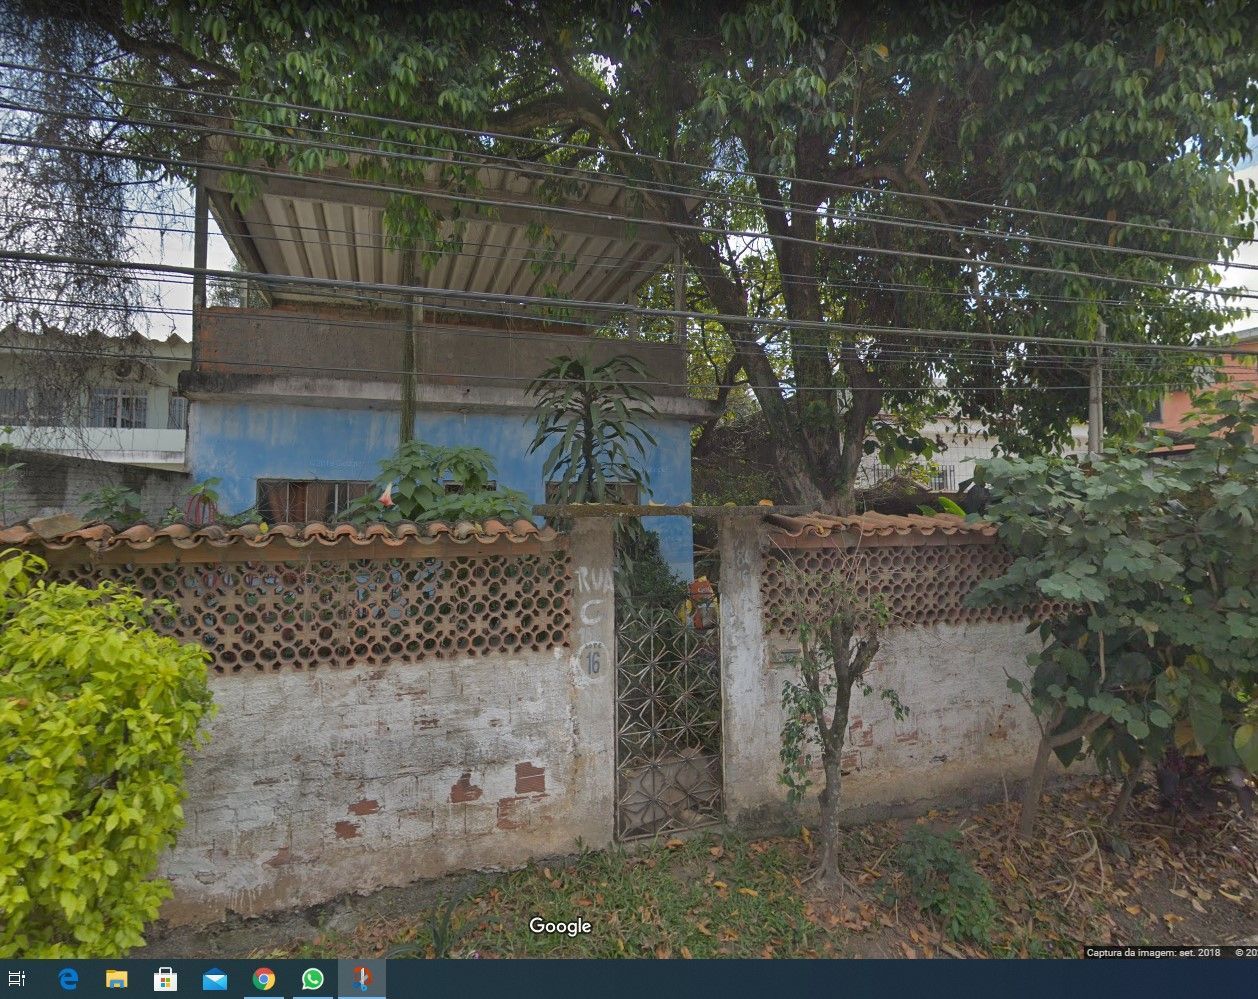 Casa  venda  no Jardim Primavera - Duque de Caxias, RJ. Imveis